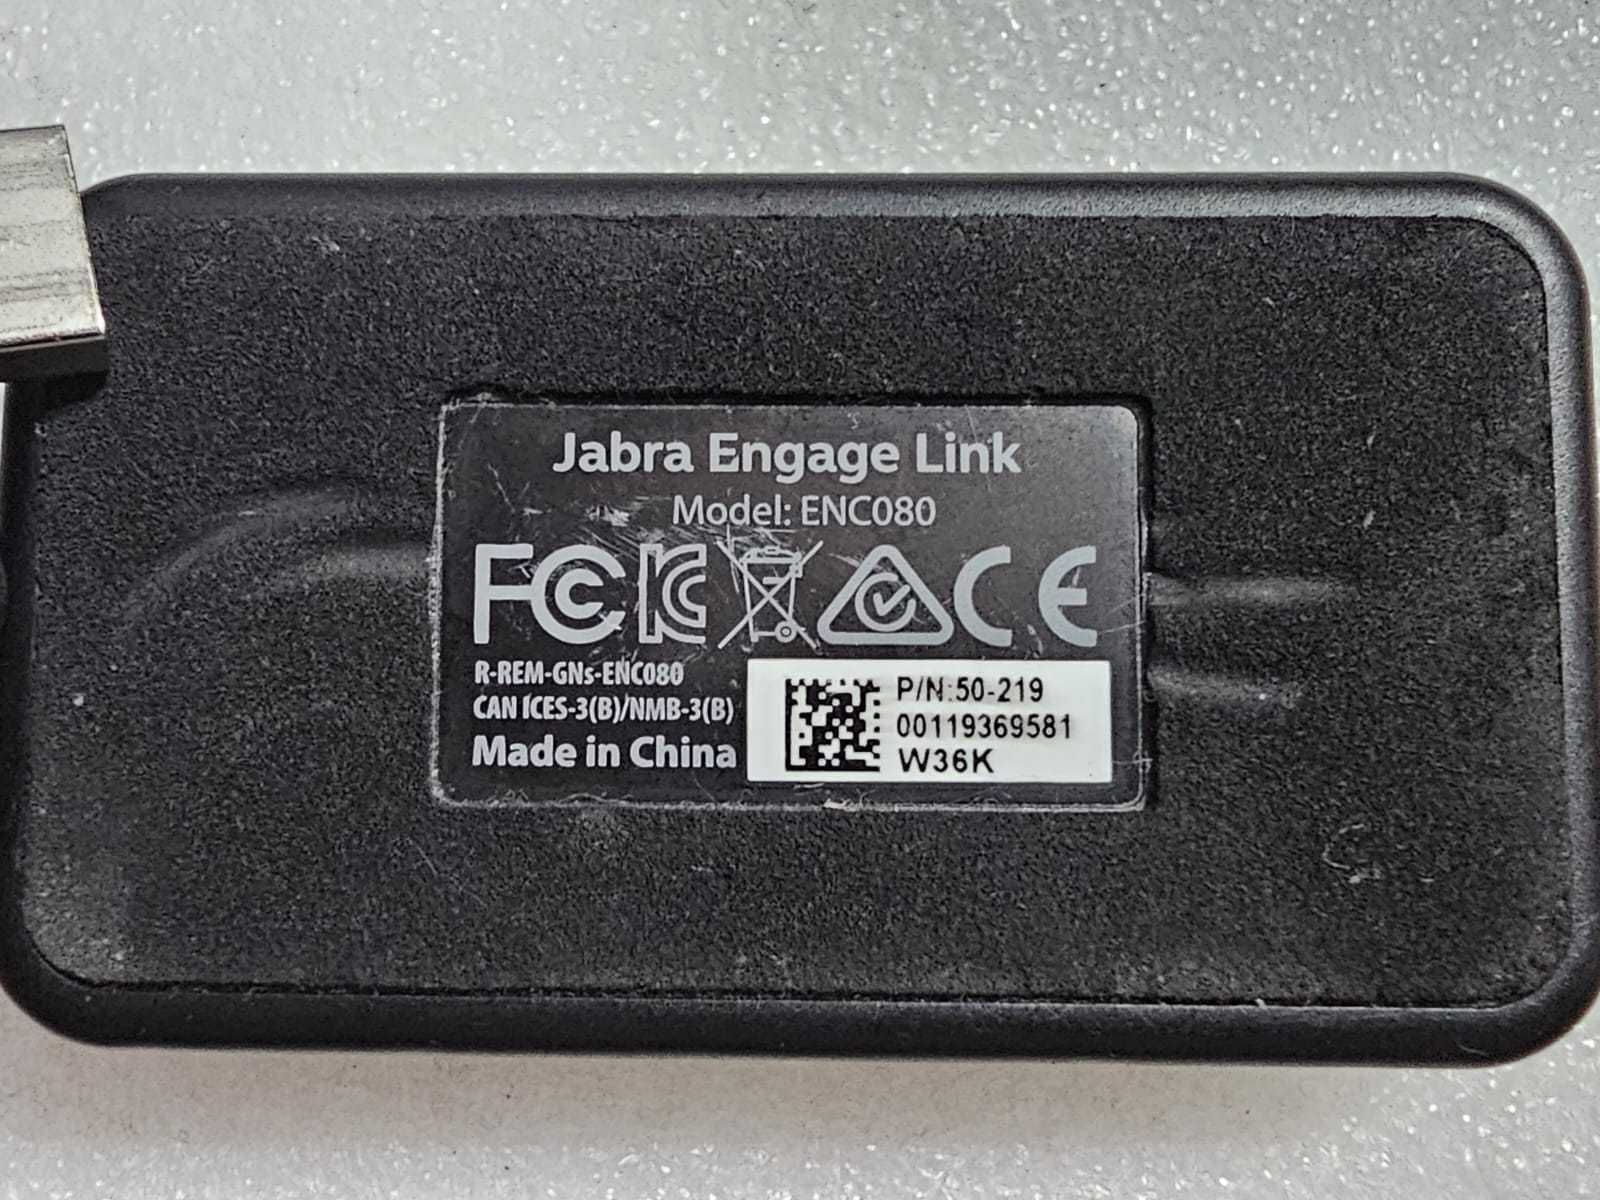 Controller Jabra Engage Link, USB, model: ENC080